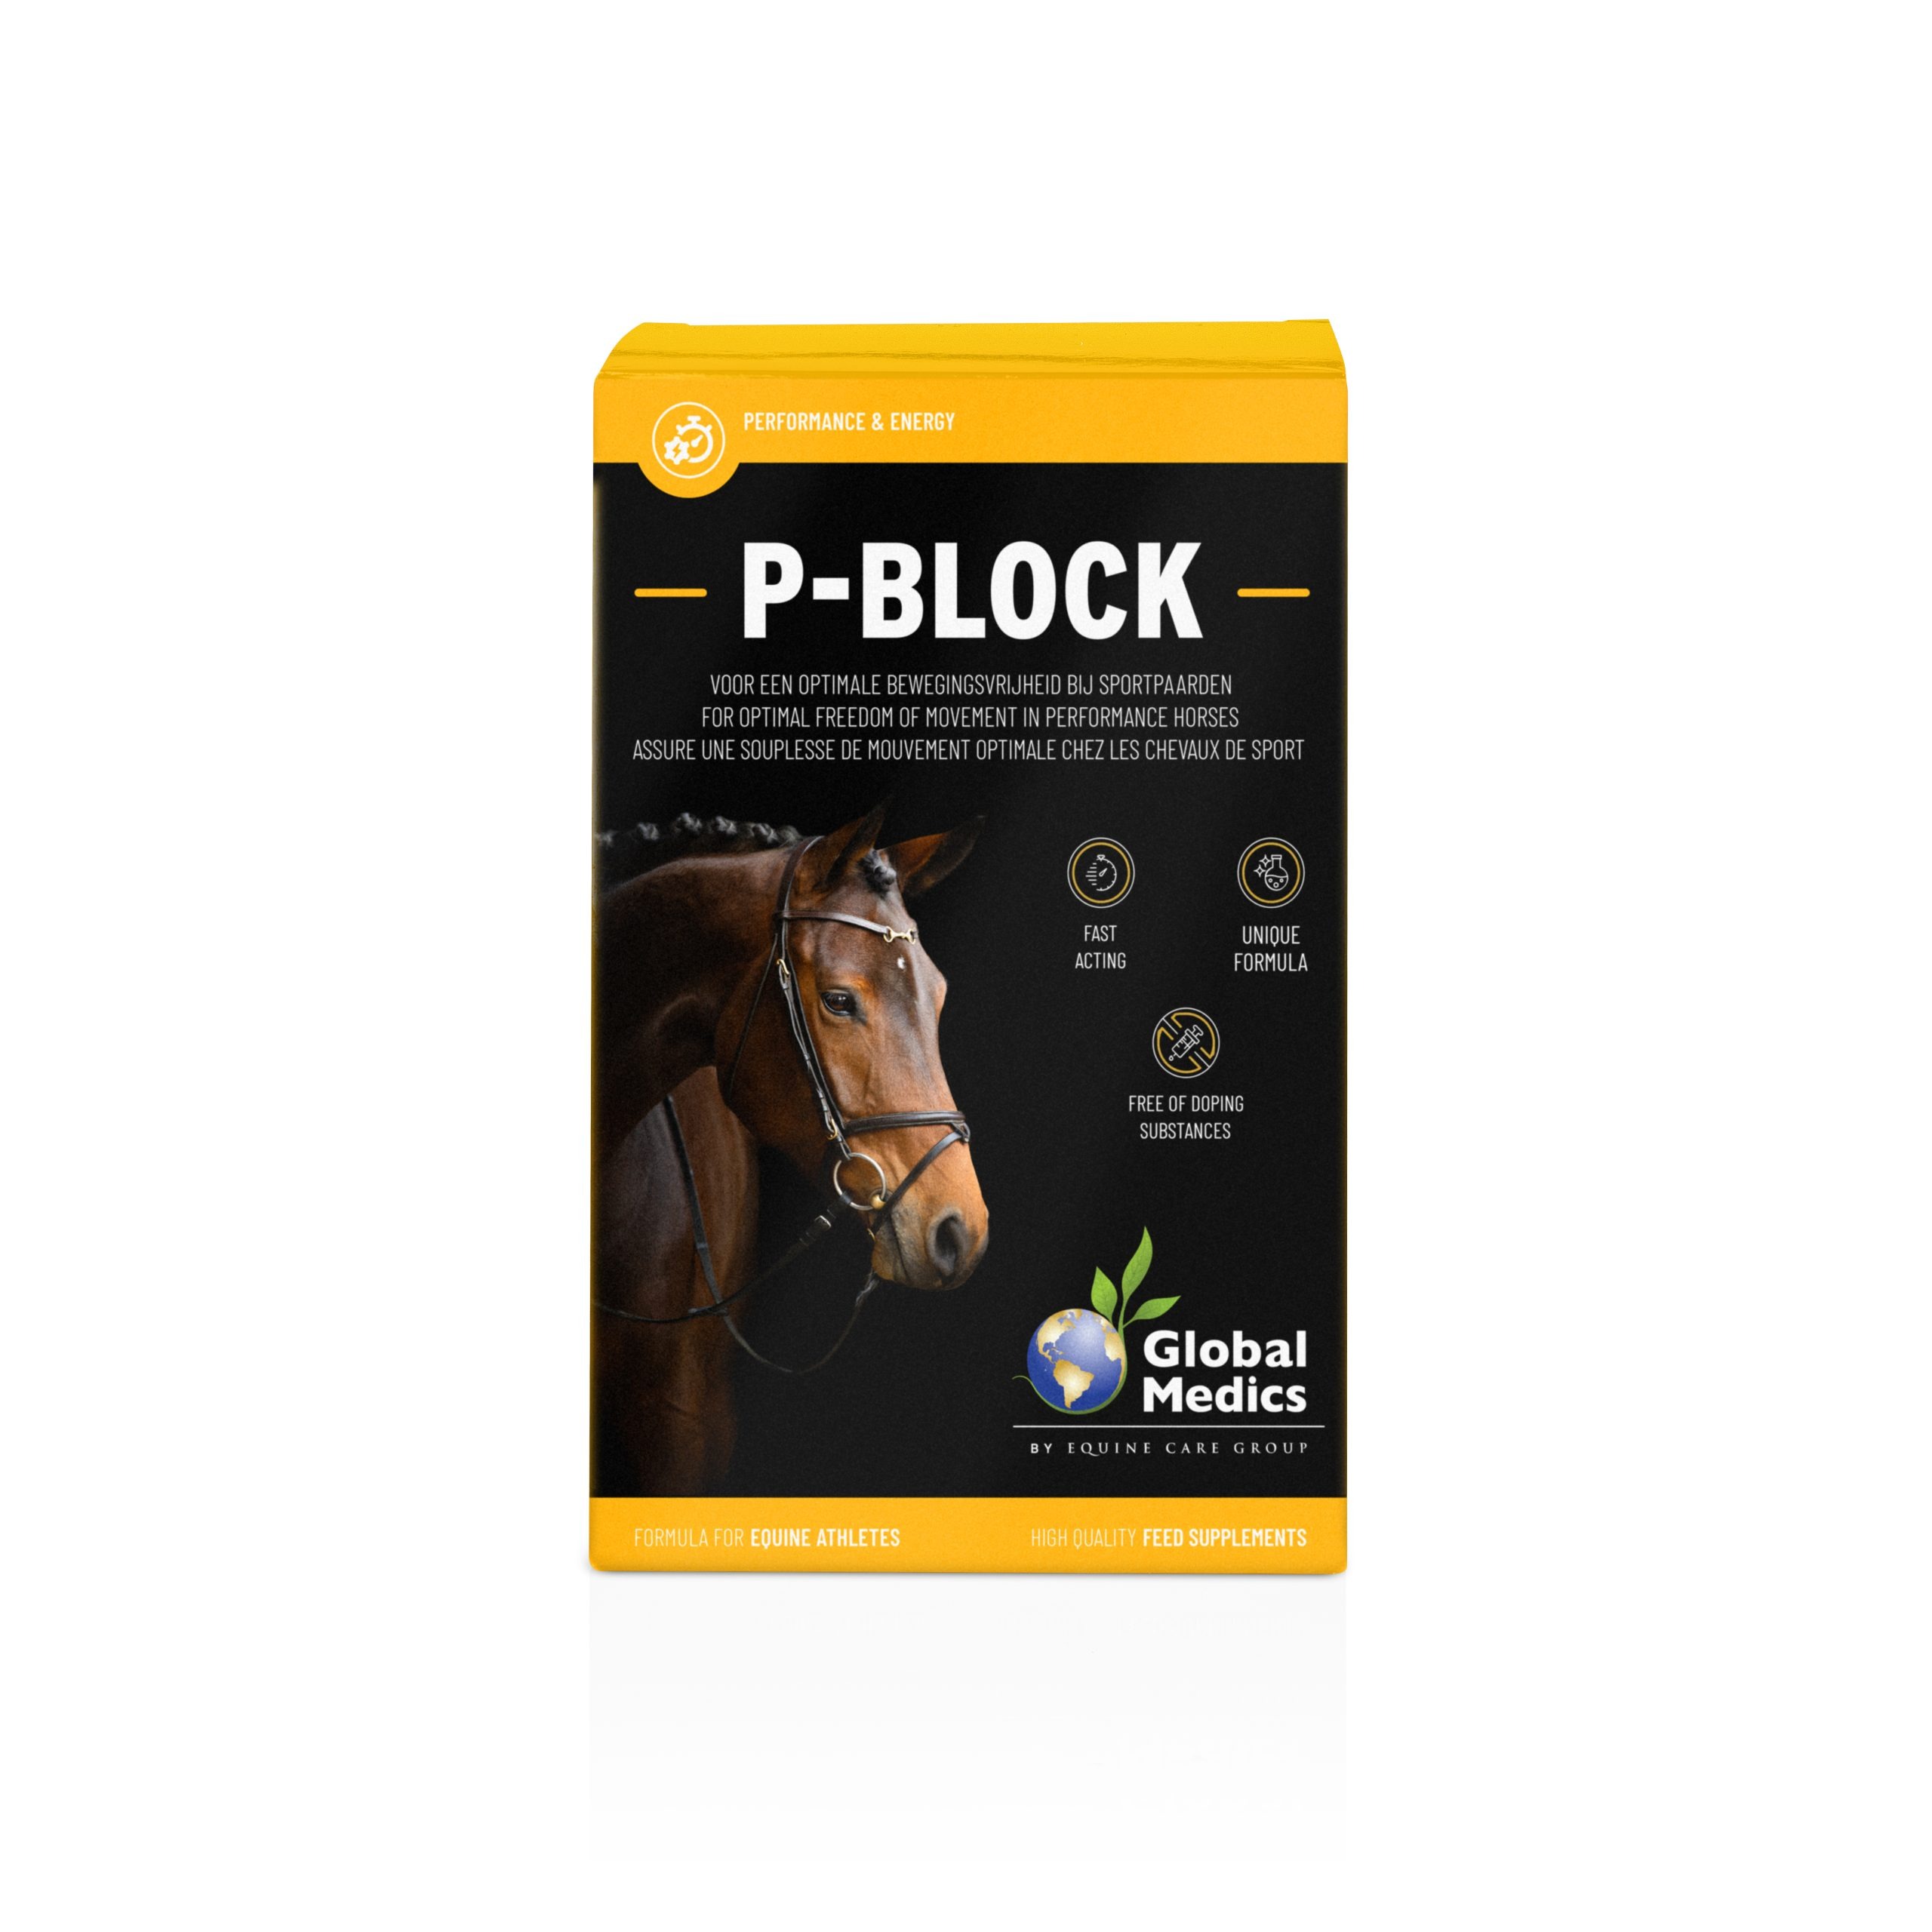 Køb Global Medics P-Block - Optimal bevægelsesfrihed hos sportsheste. Bestil i dag – Vi leverer i løbet af 1-3 dage. Fragtfrit fra kun 499.- til pakkeshop.